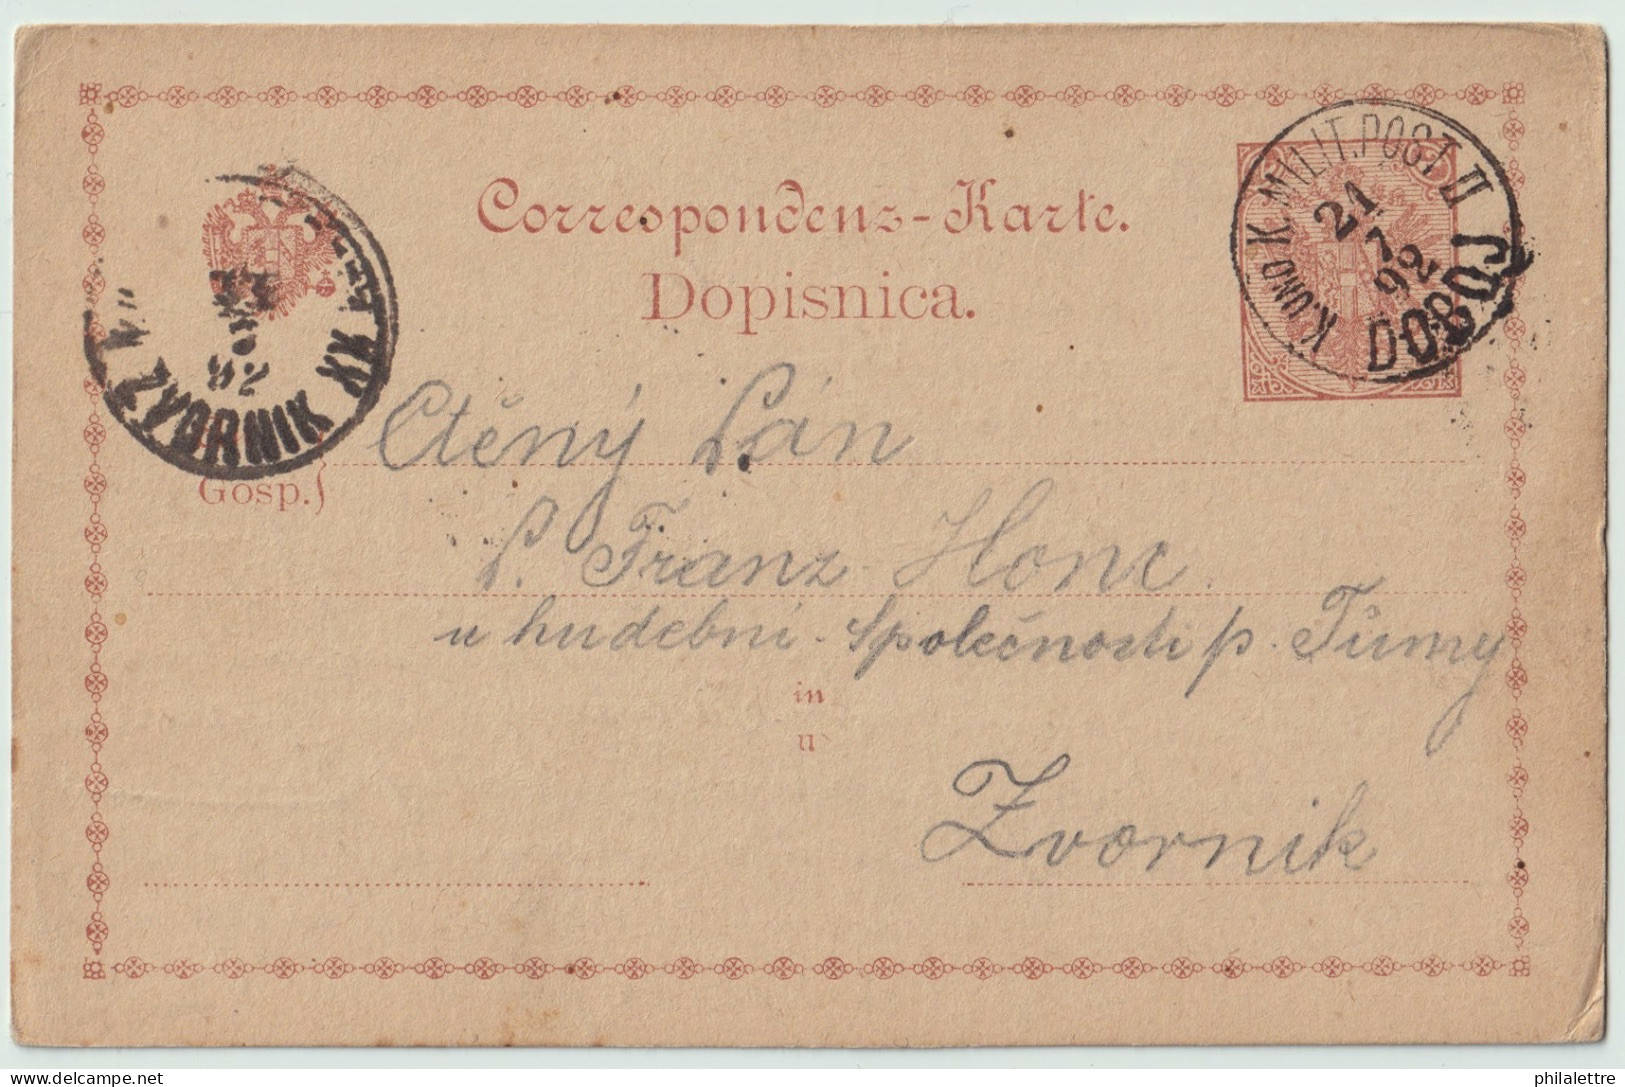 BOSNIE-HERZÉGOVINE / BOSNIA 1892 2kr Postal Card Used K.u.K. MILIT POST II / DOBOJ To ZVORNIK - Bosnië En Herzegovina